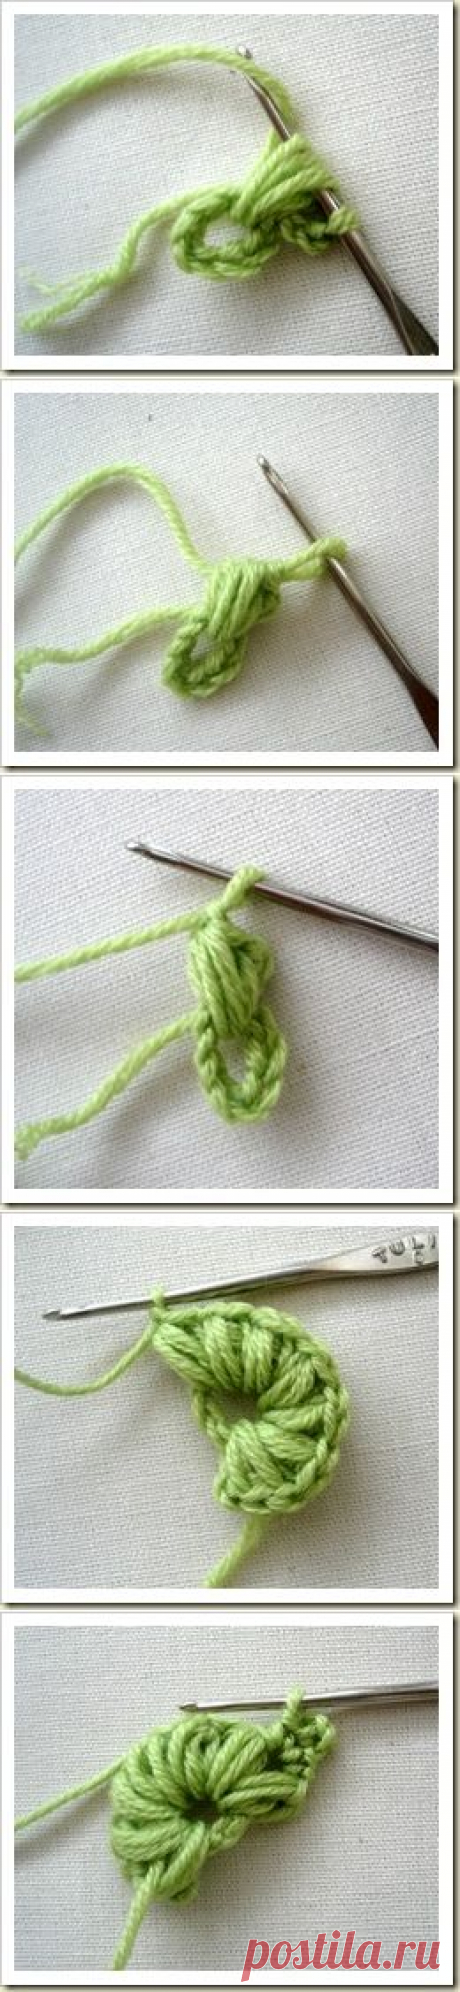 Irish crochet &amp;: Ленточное кружево.